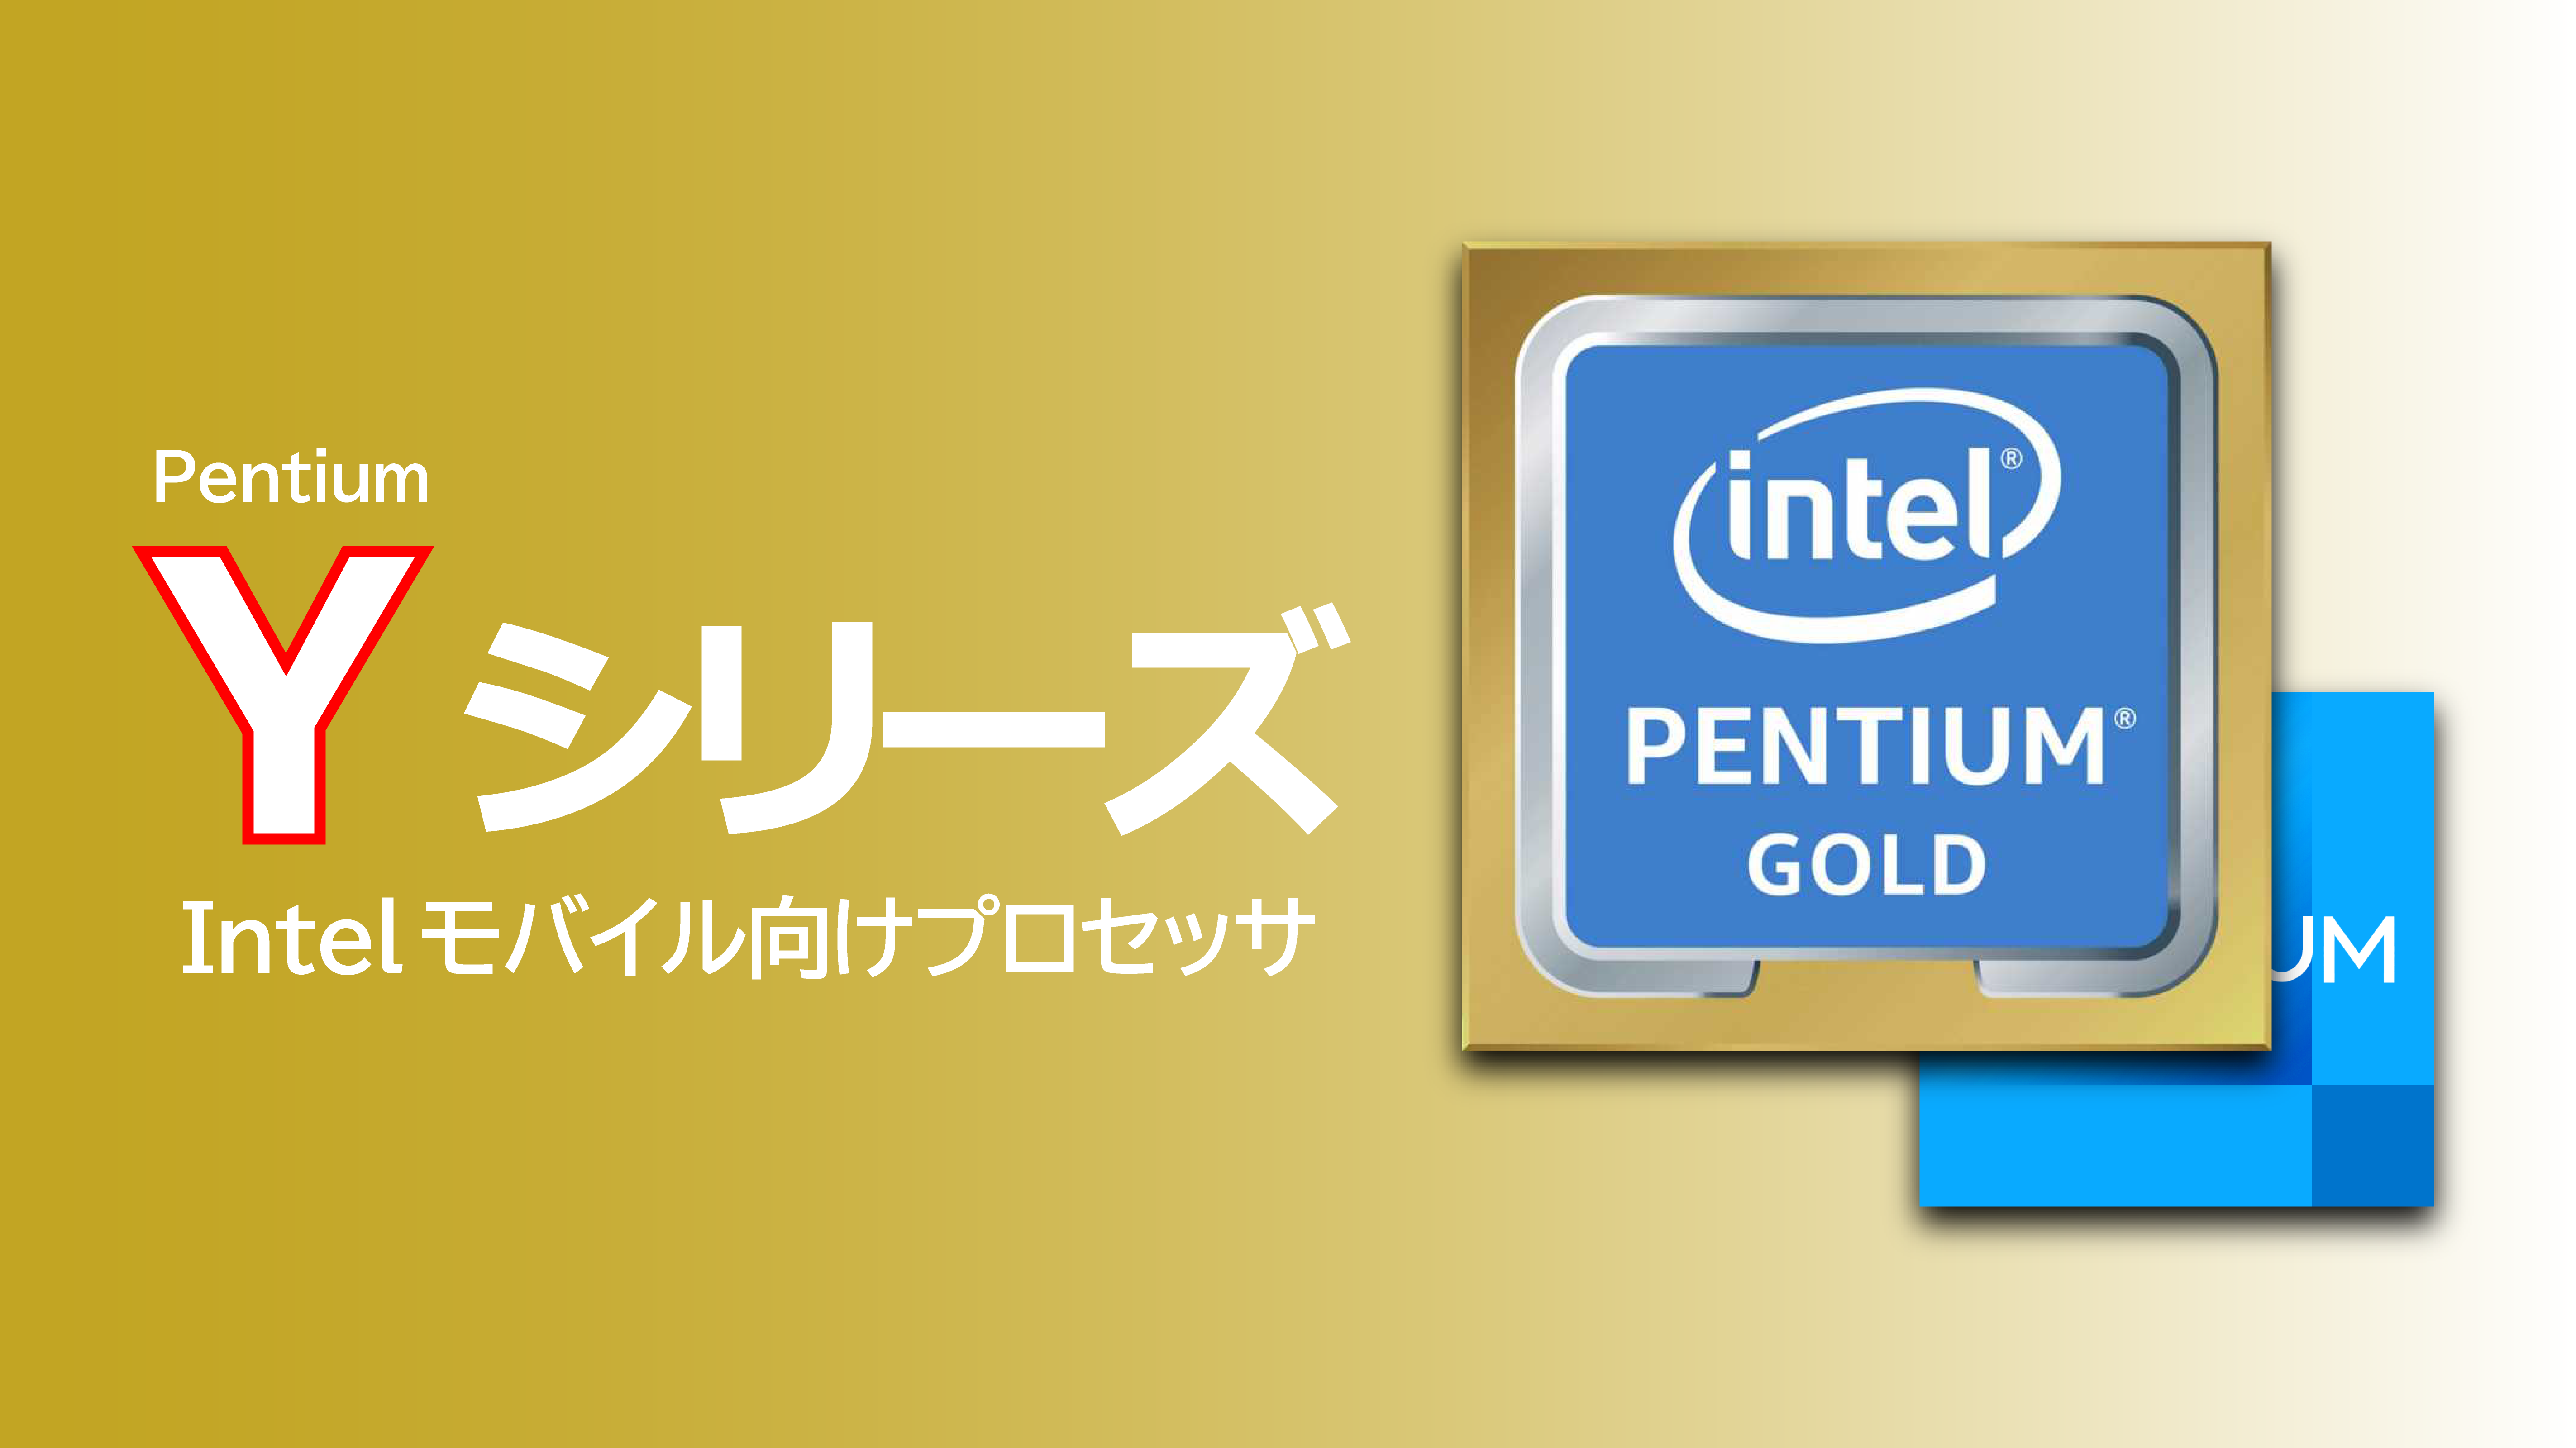 Pentium「Y」シリーズの性能まとめ(4415Y 6500Y)